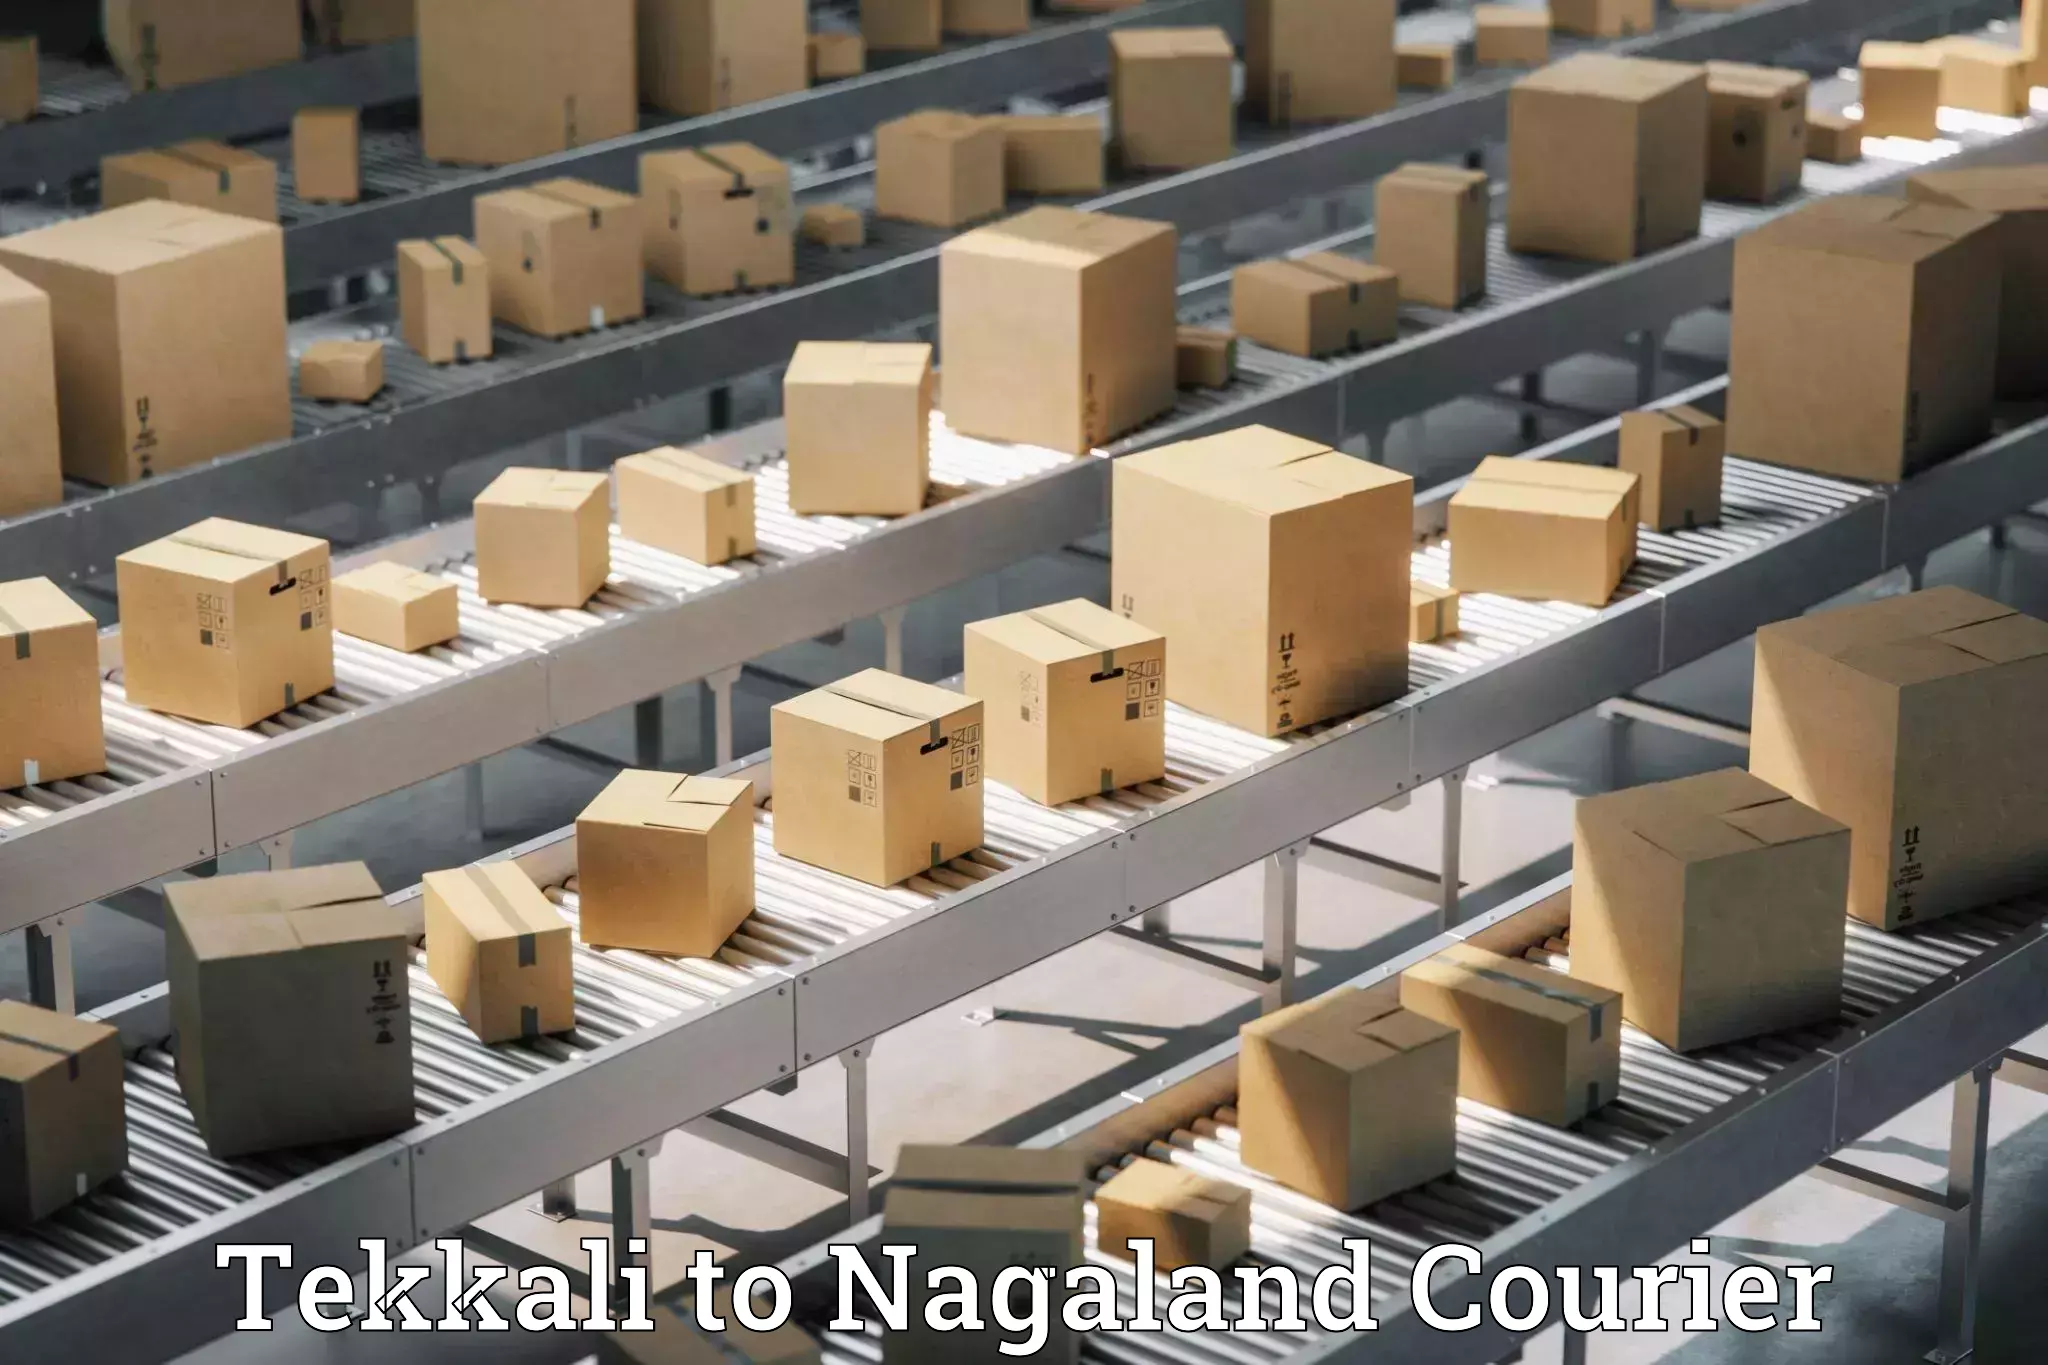 Luggage shipment specialists Tekkali to Nagaland